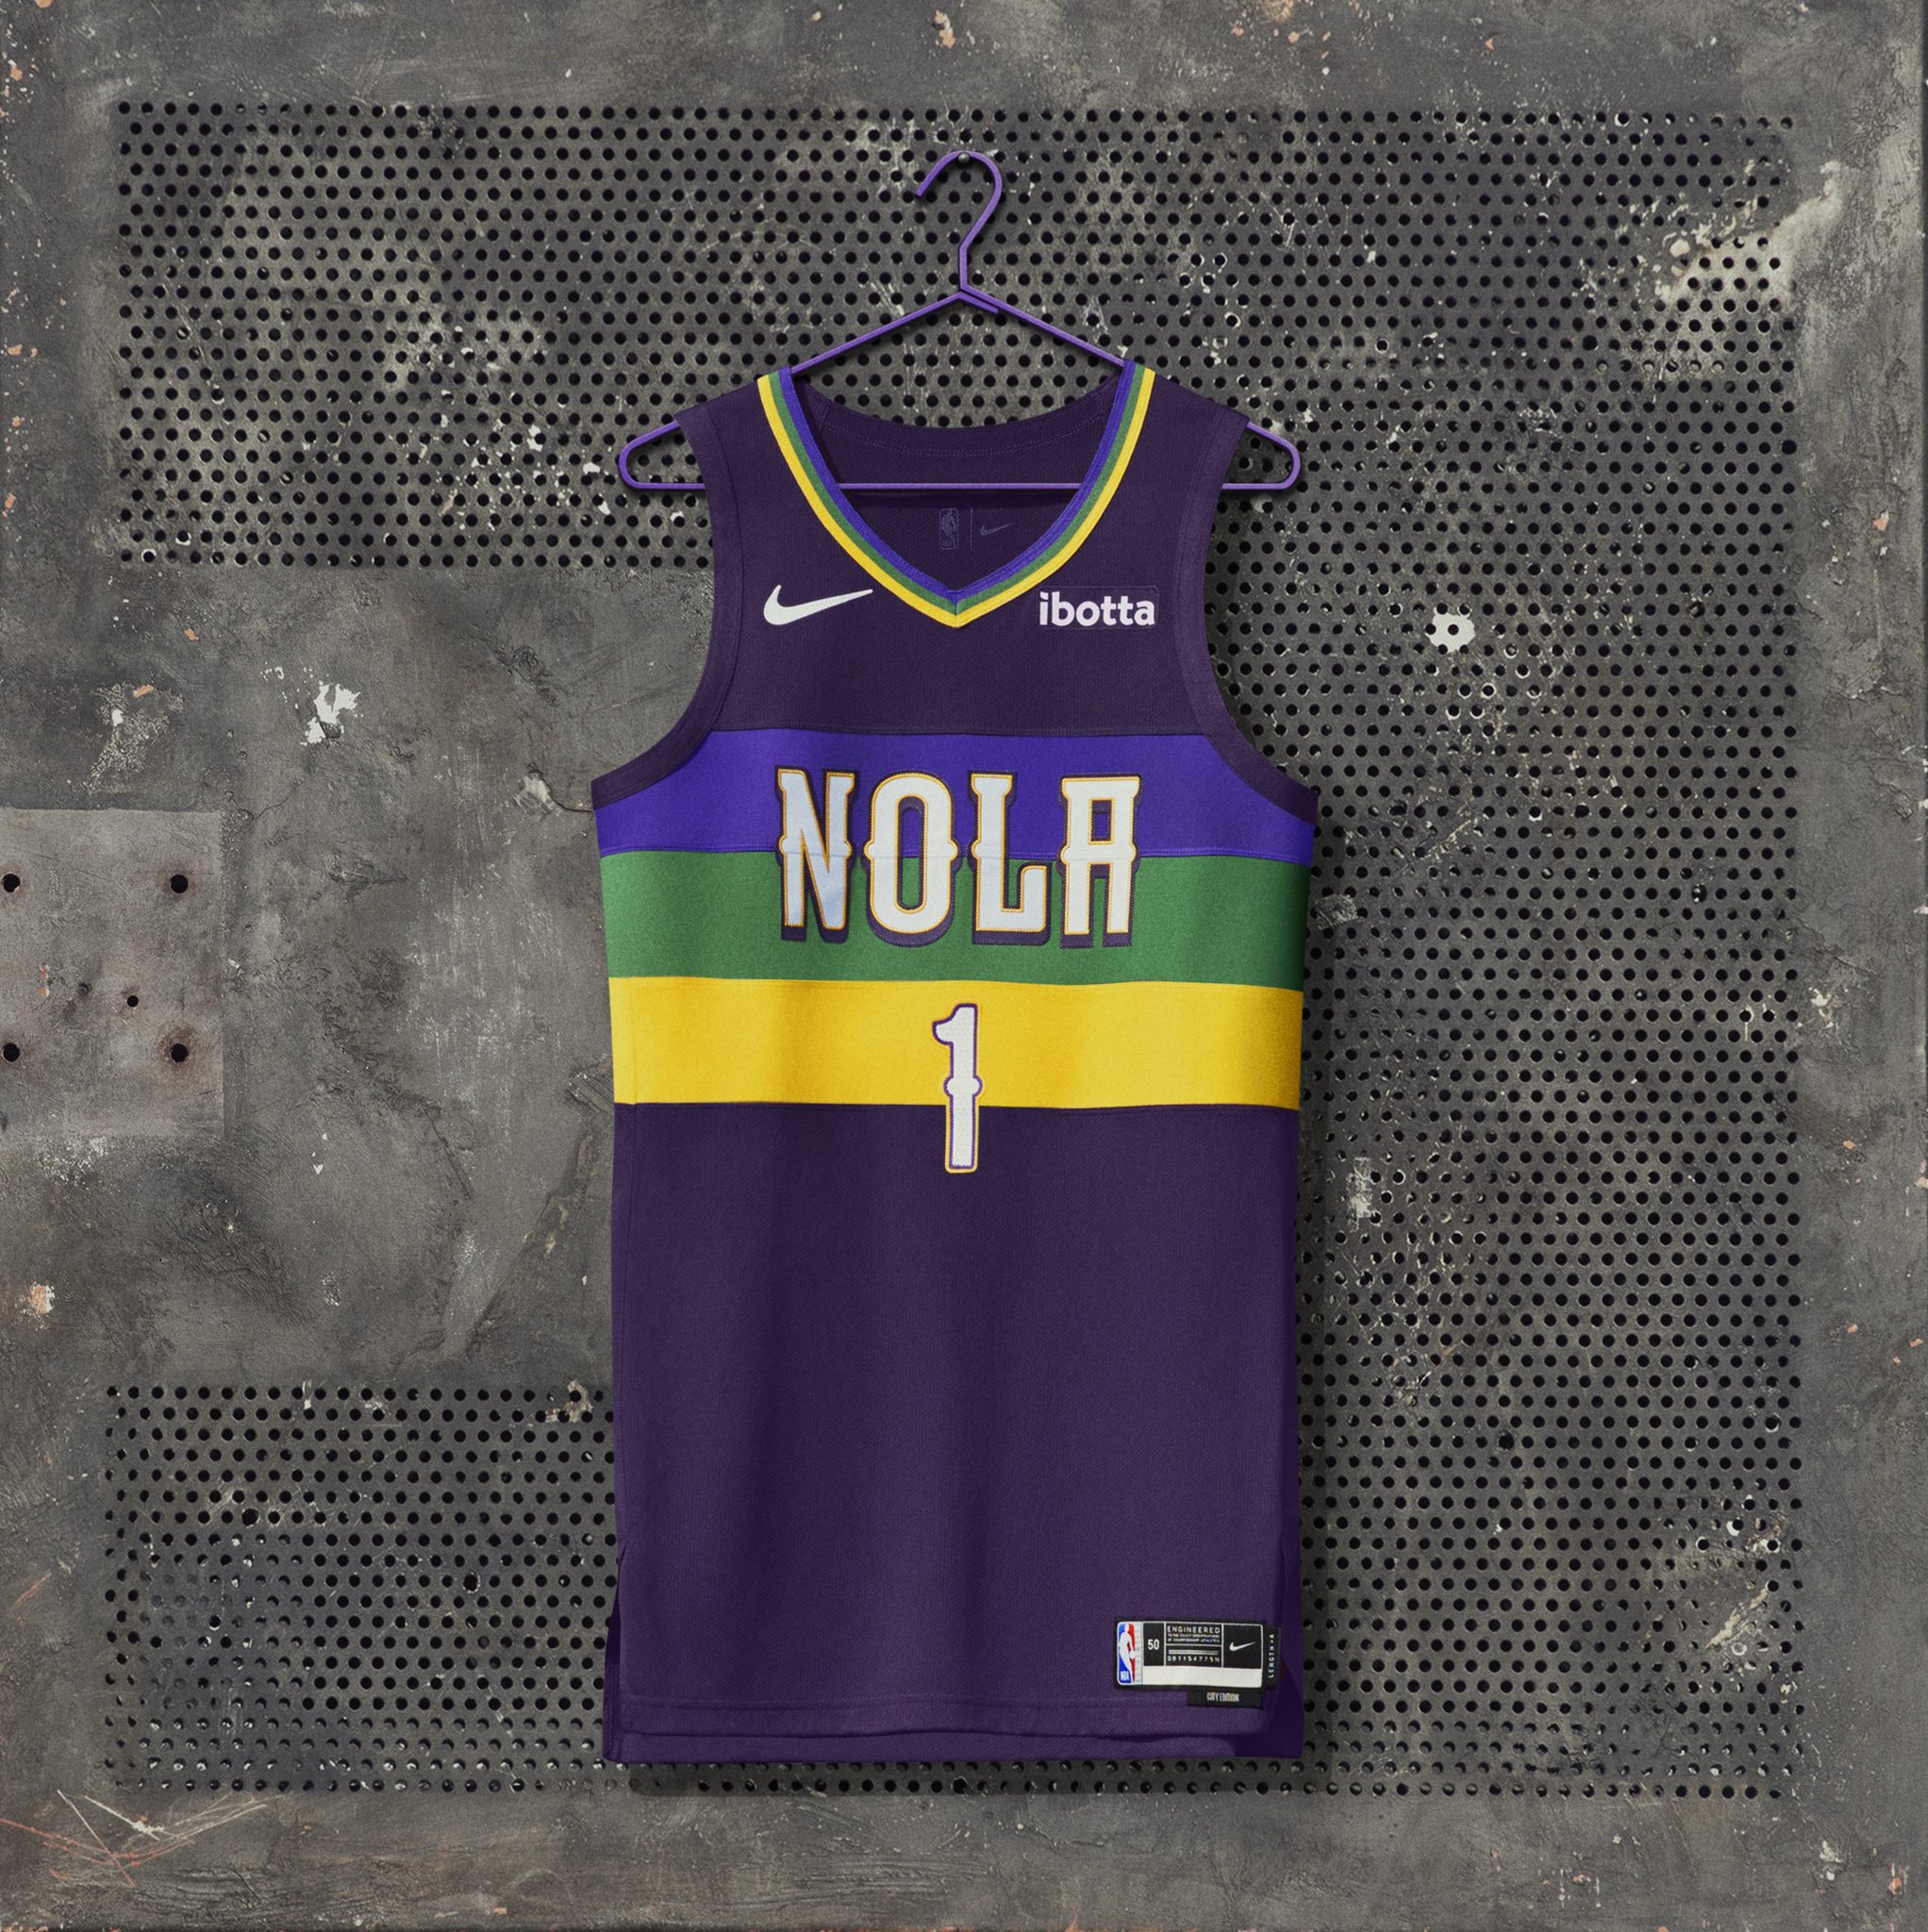 Cancha NBA on Twitter: "NEW ORLEANS PELICANS Los de Nueva Orleans han rendir homenaje a las celebraciones locales de Mardi Gras con sus colores. Incorporan además el acrónimo "NOLA" en recuerdo